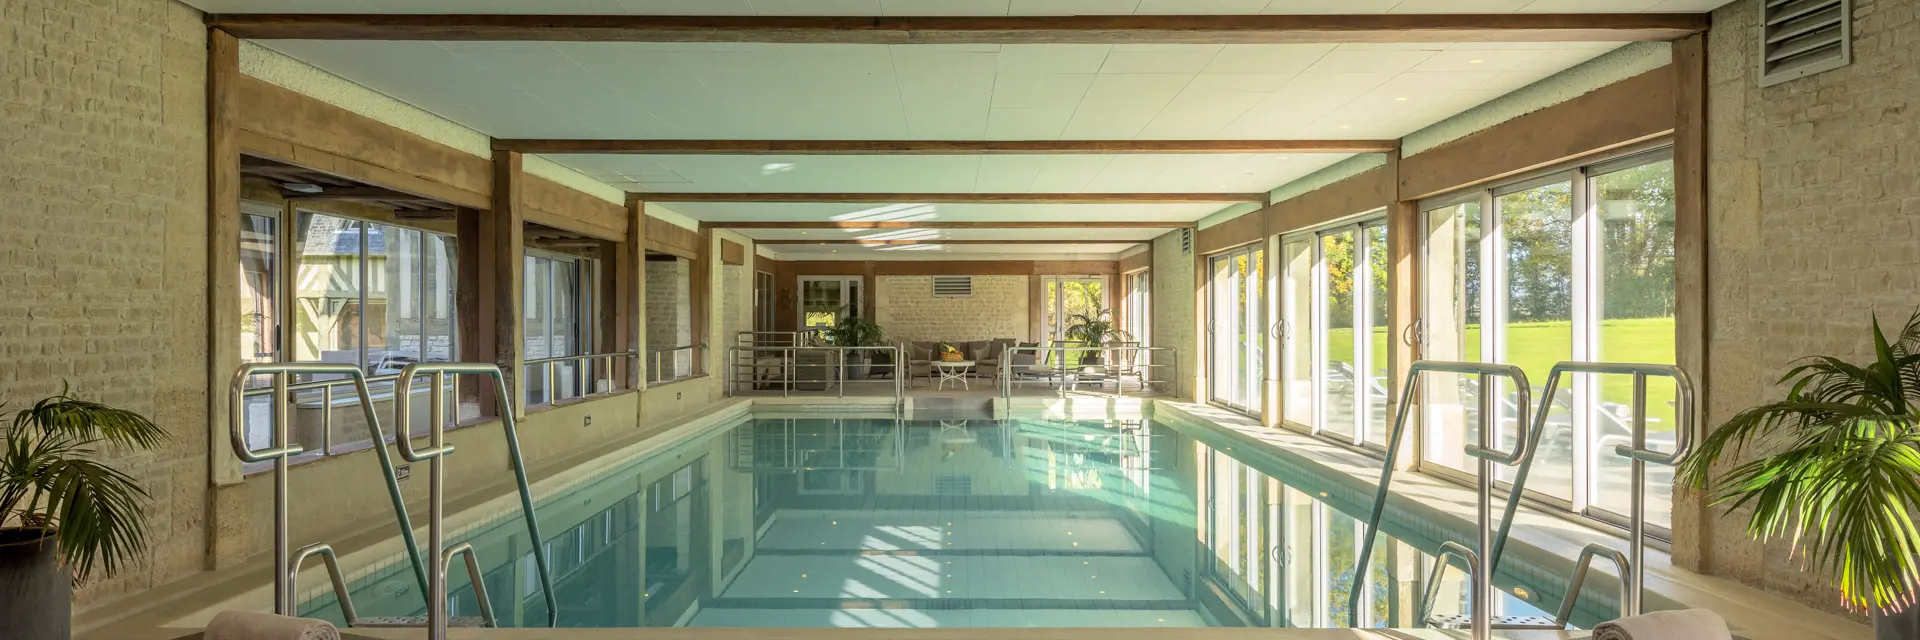 hotel les manoirs de tourgeville piscine swimming pool  alexandre chaplier deauville 2